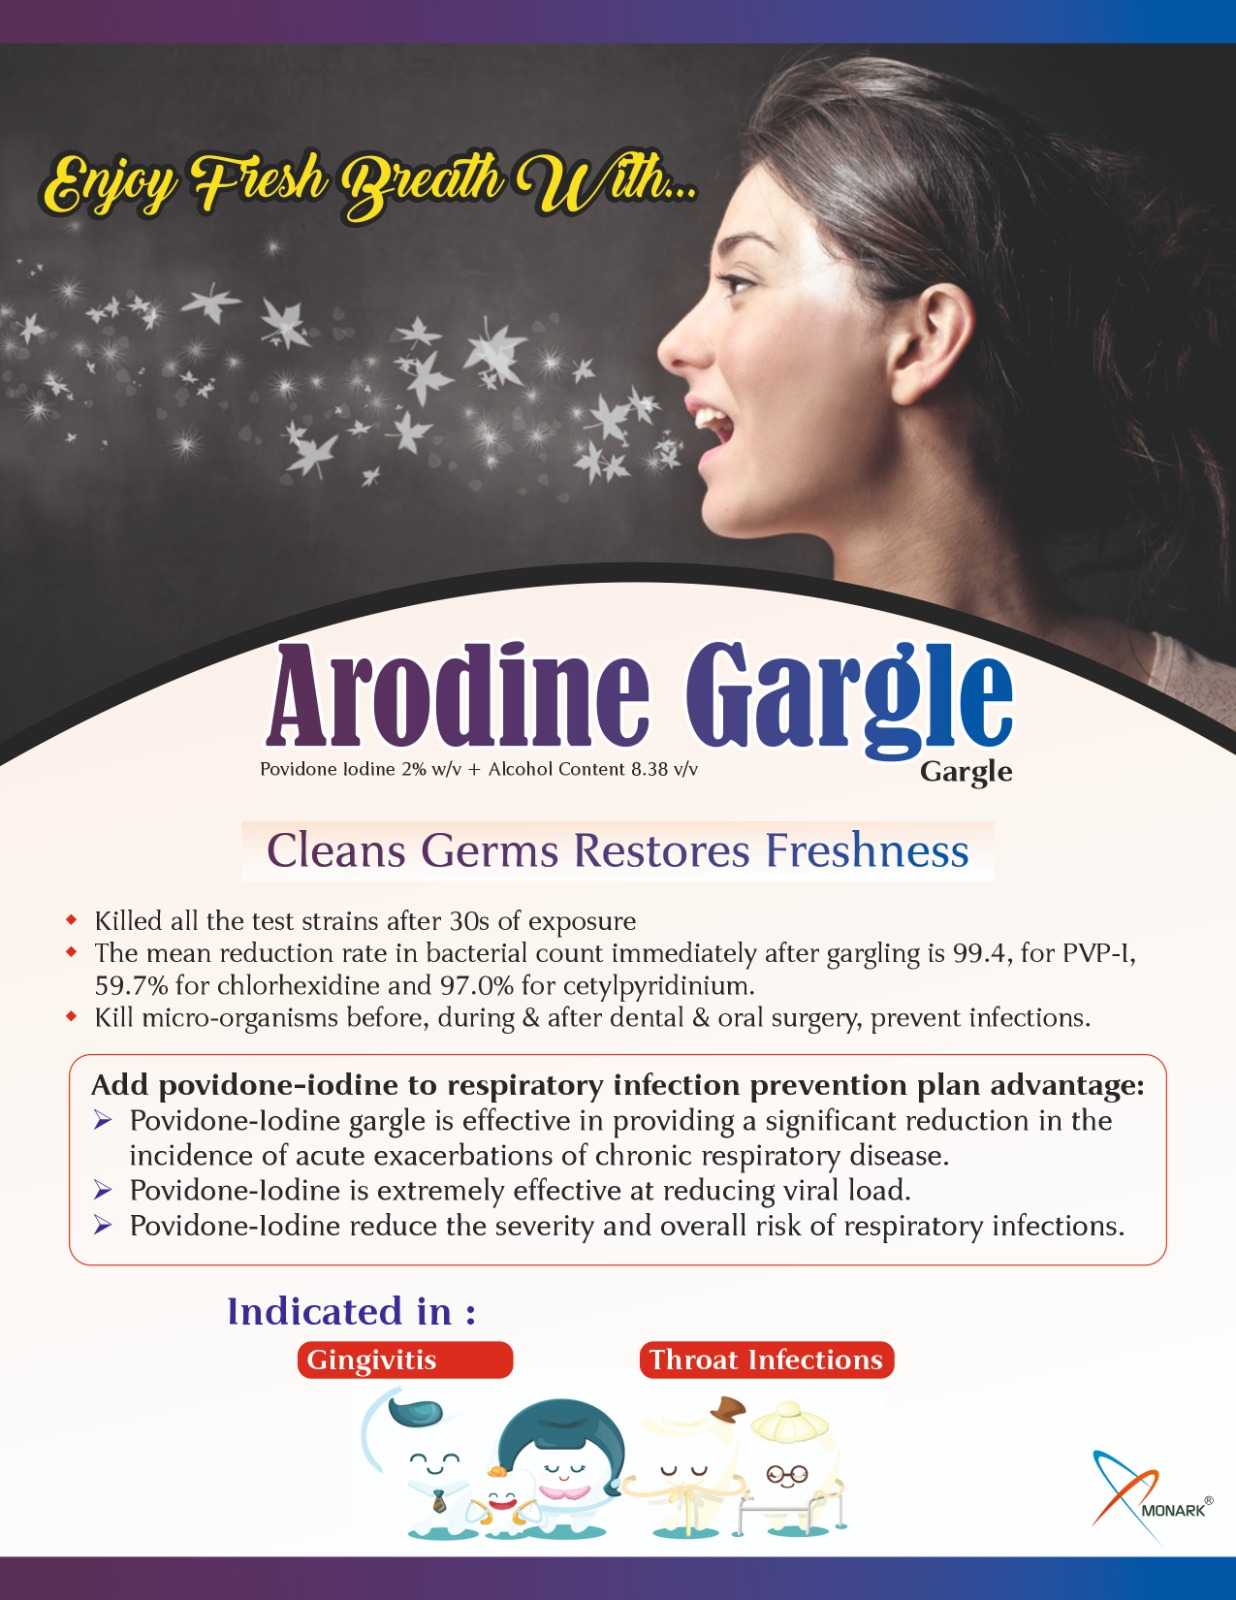 ARODINE GARGLE